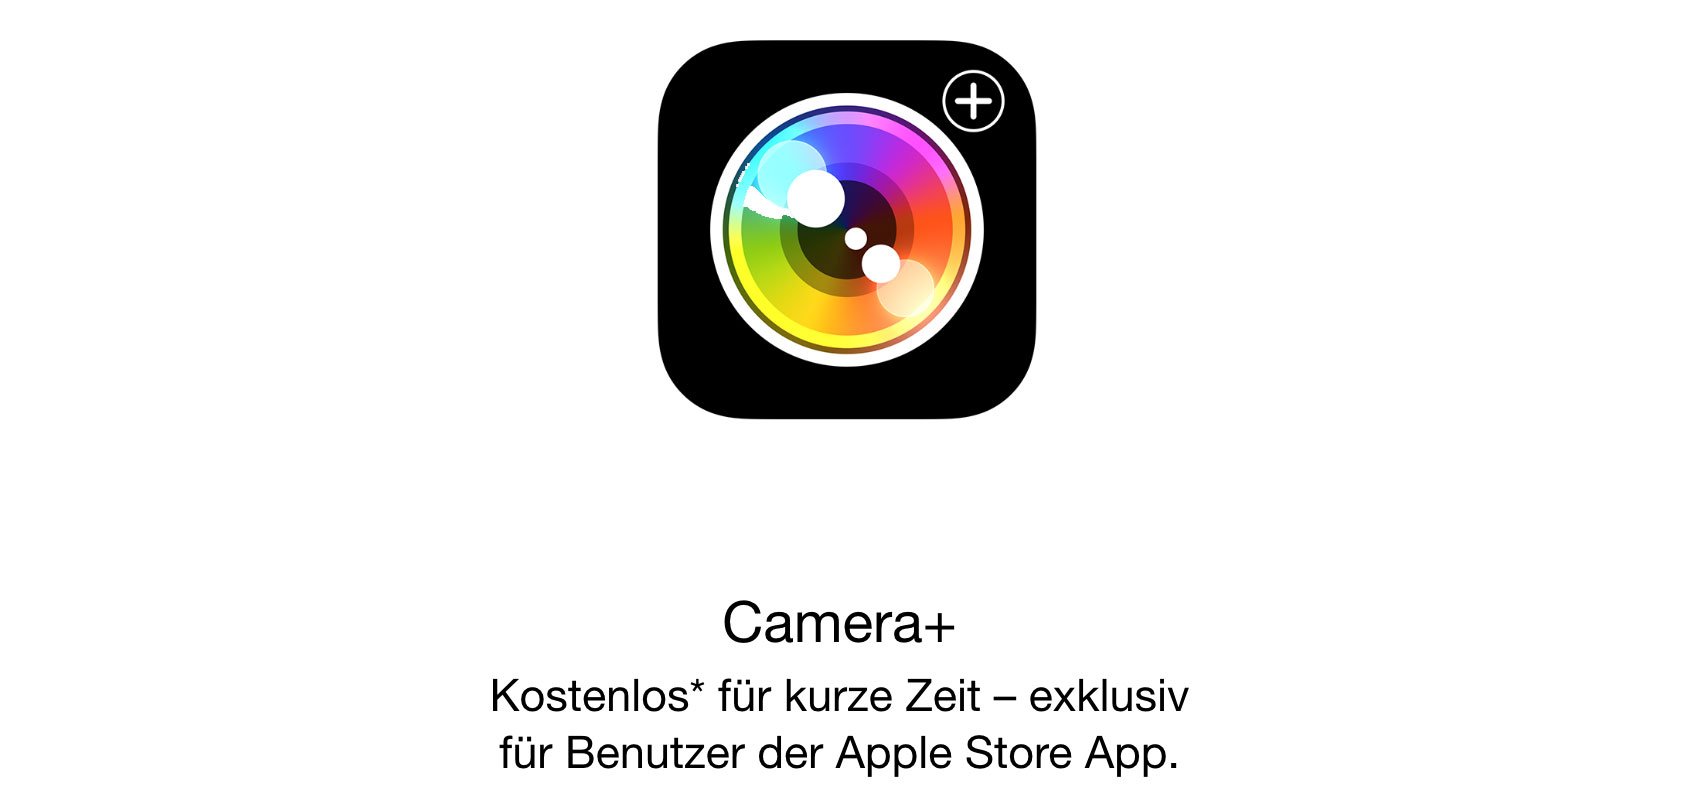 Camera+ heute kostenlos: Foto-App fürs iPhone mit iOS 8 Support! 1